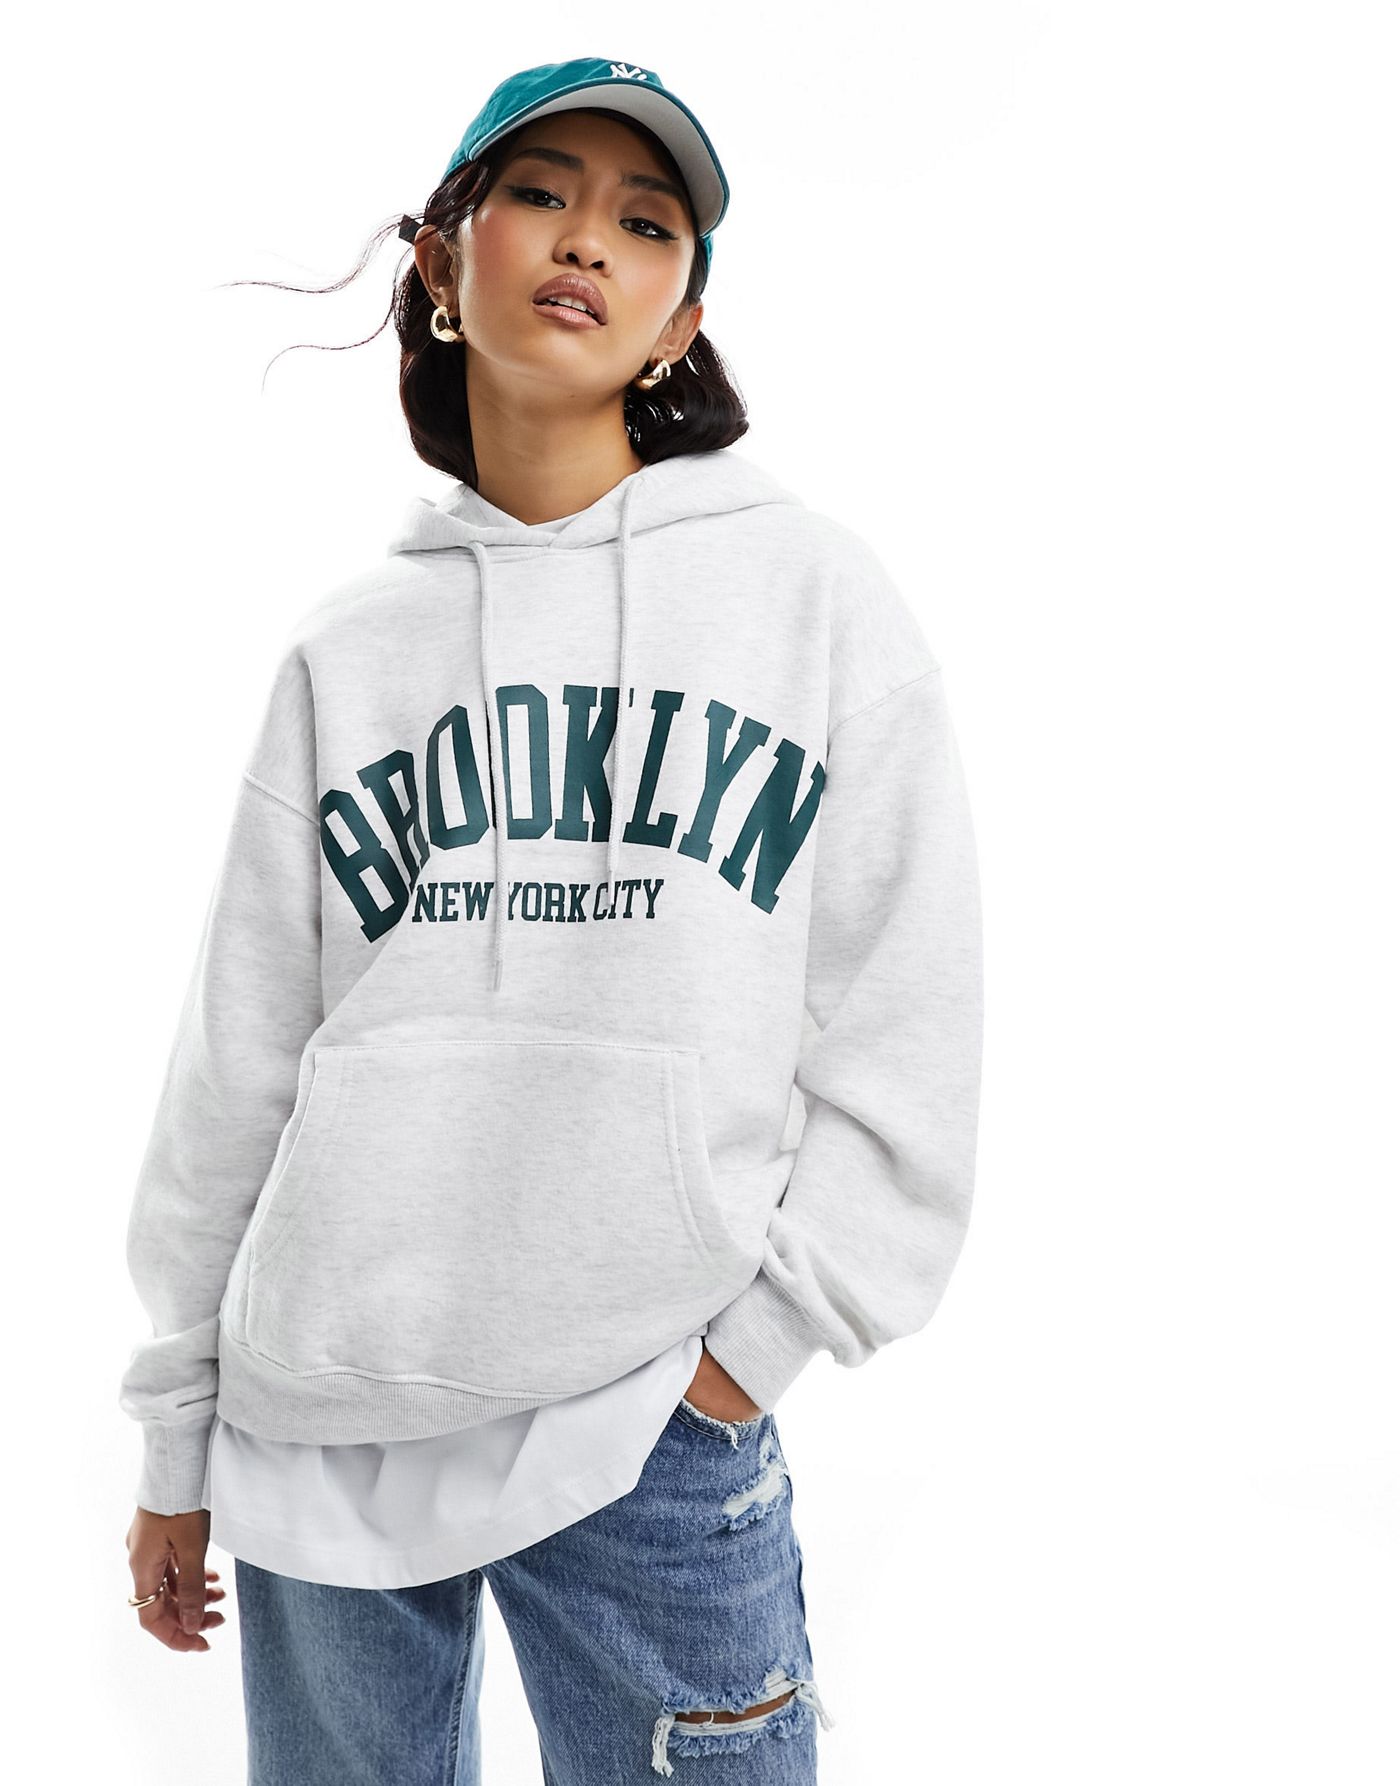 New Look Brooklyn hoodie in light grey